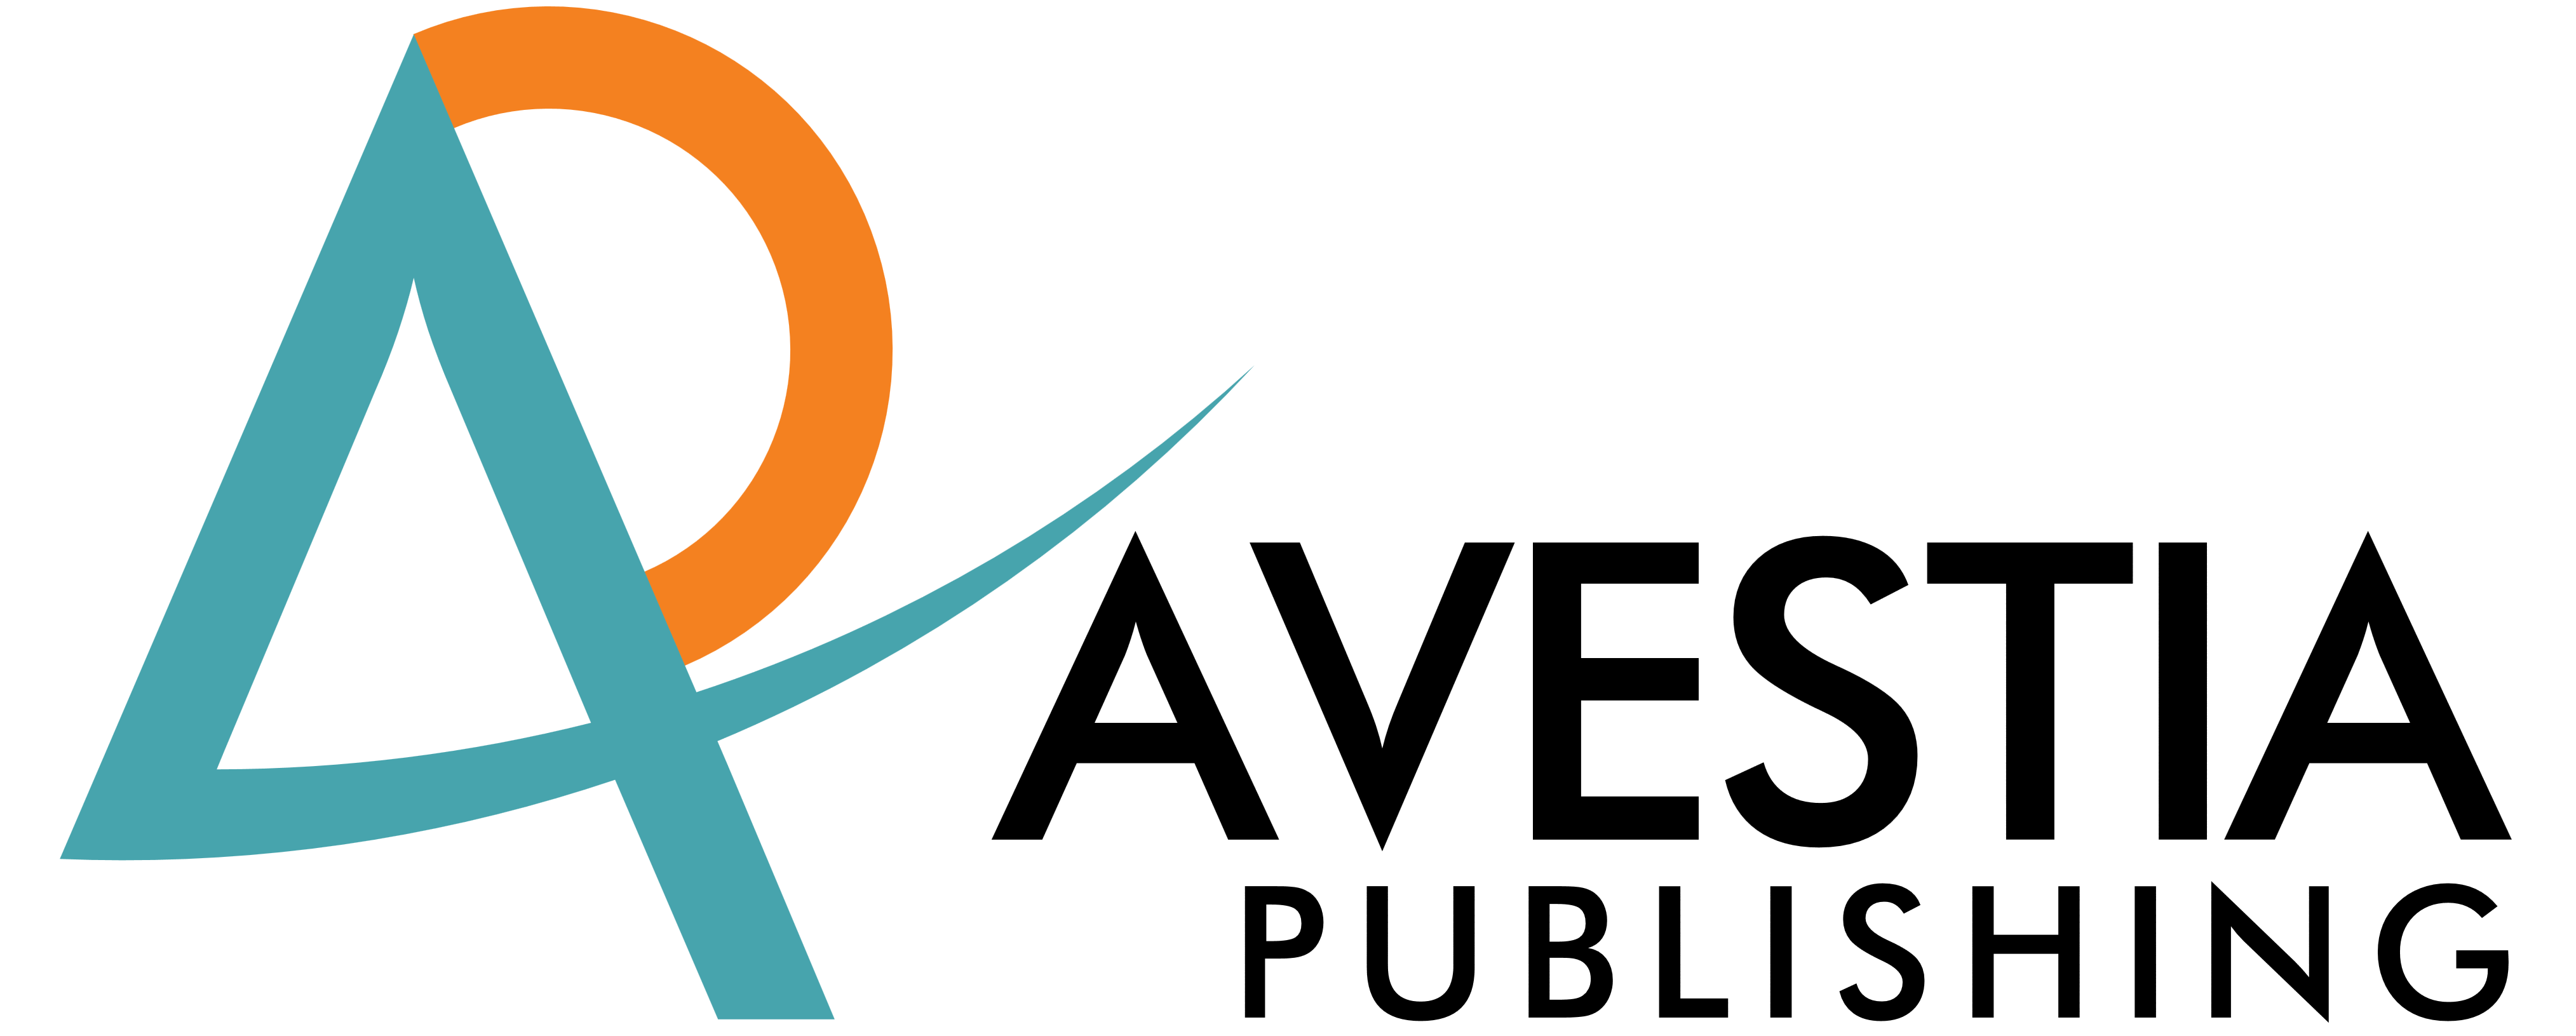 Avestia Publishing logo, logotype